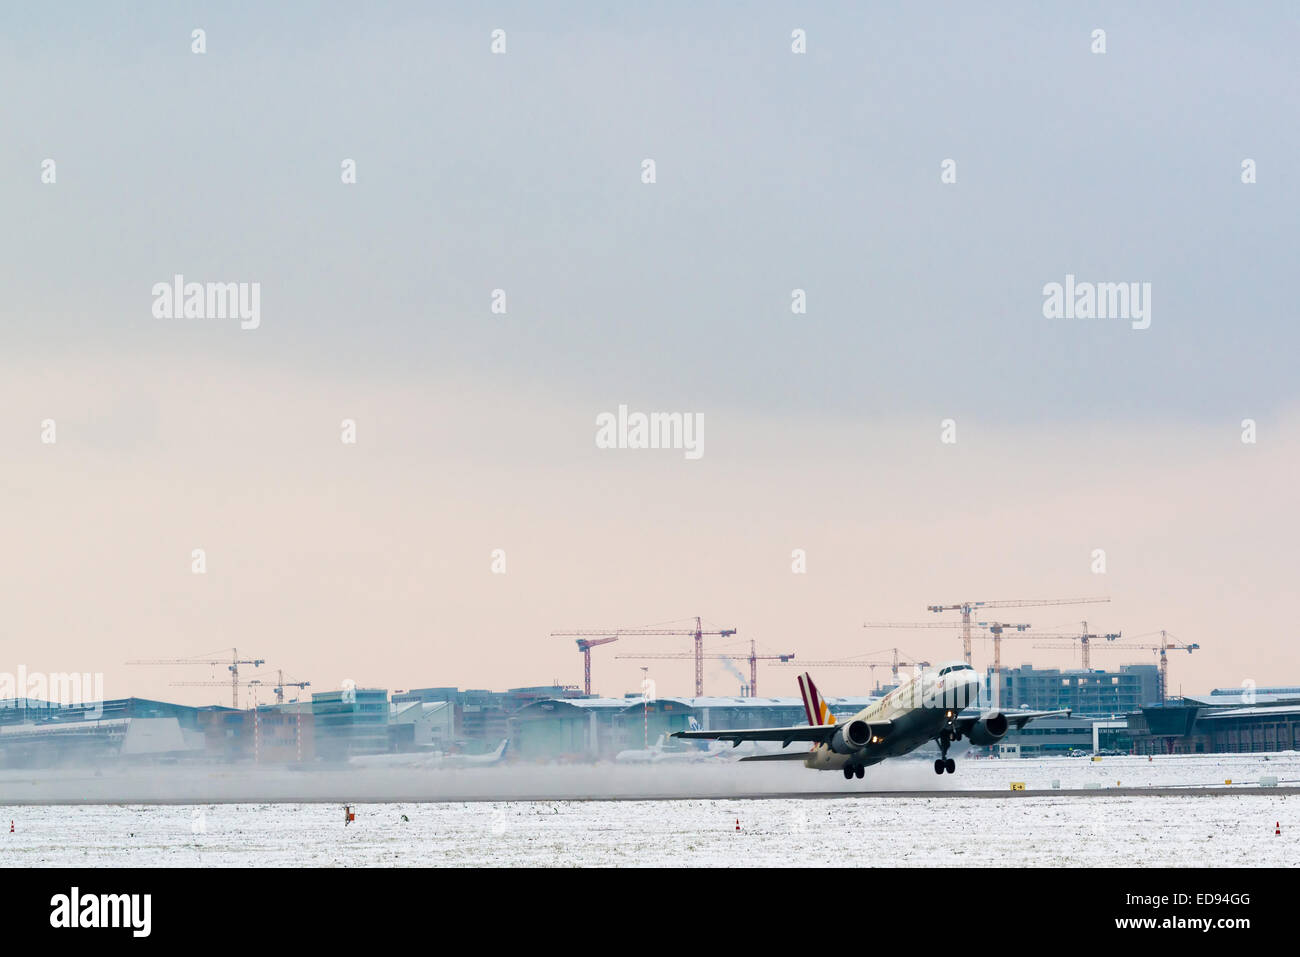 STUTTGART, Deutschland - 28. Dezember 2014: A Germanwings Flugzeug Flughafen Stuttgart an einem frostigen Wintertag am Dezember fährt Stockfoto